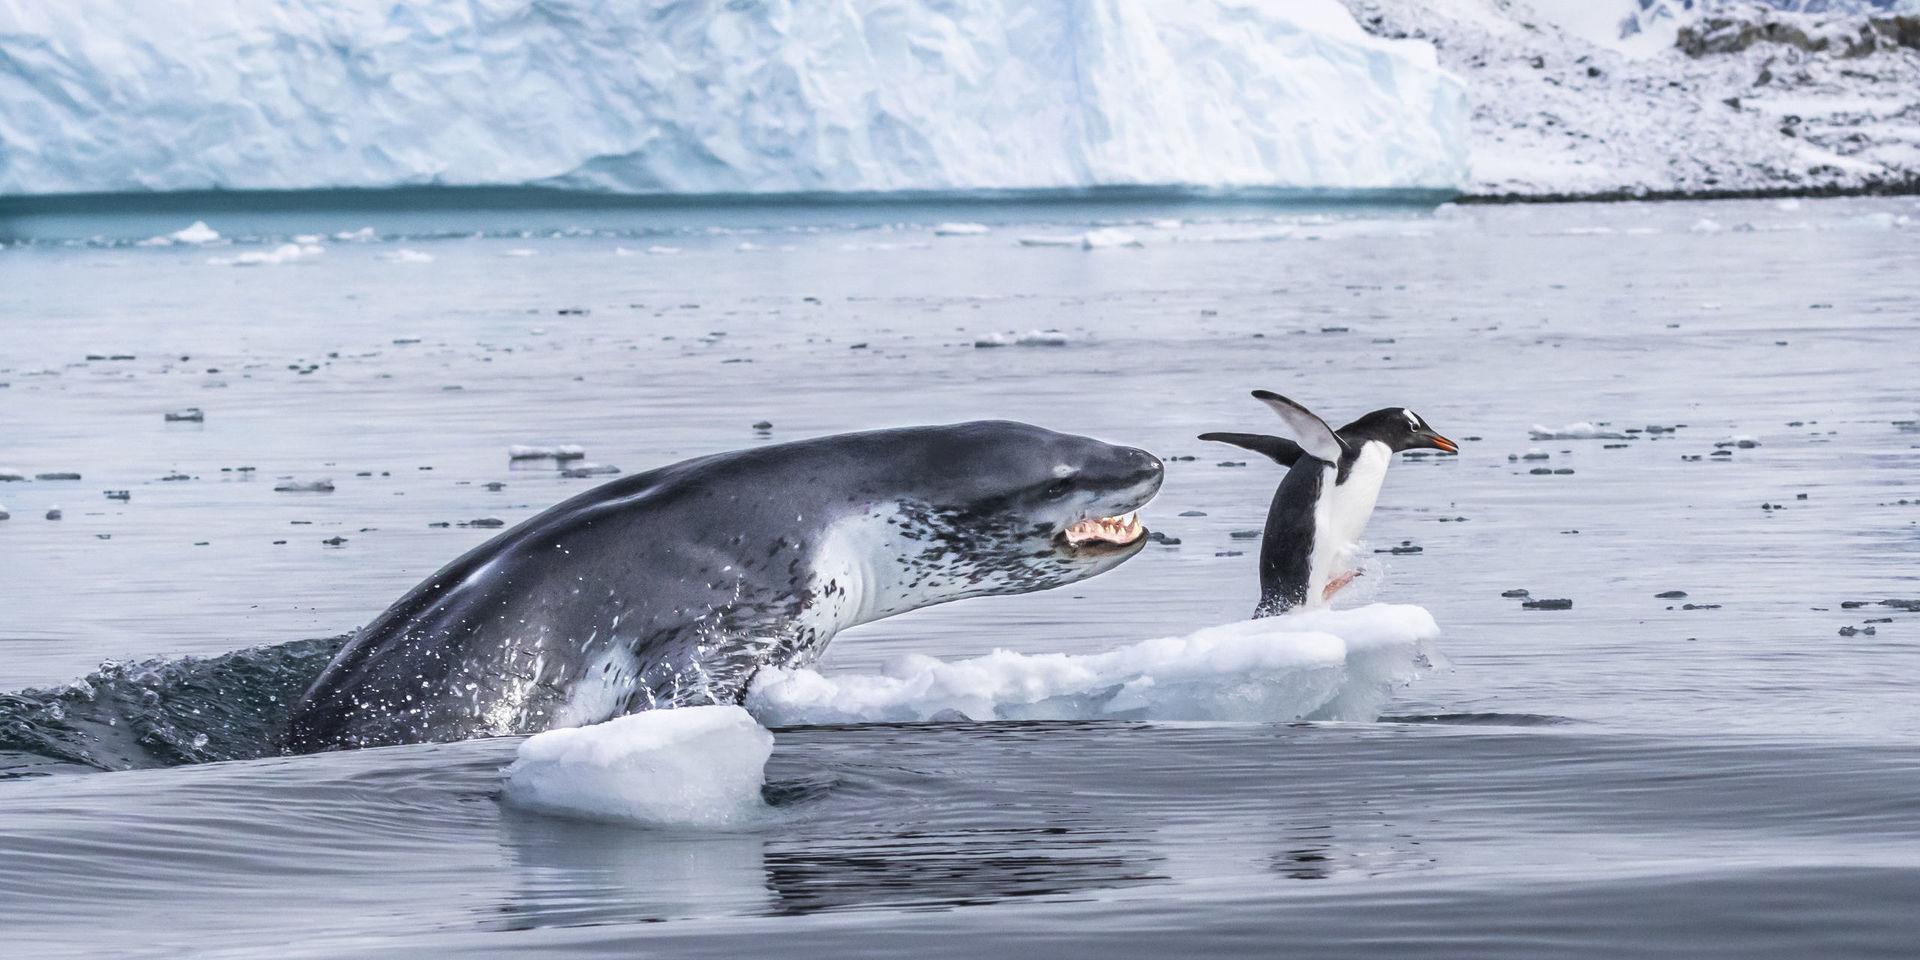 Om pingviner kunde flyga. En sjöleopard kastar sig upp ur vattnet och fångar en åsnepingvin i Antarktis. Åsnepingvinen är den snabbaste av alla pingvinarter under vattnet. Innan sjöleoparden åt upp pingvinen, lekte den med bytet, något sjöleoparder ofta gör. I det här fallet varade leken i en kvart. Sjöleoparder är väl anpassade rovdjur med snabbhet och vassa tänder som främsta vapen. En fullvuxen hona kan bli upp till 3,5 meter lång och väga 500 kg.